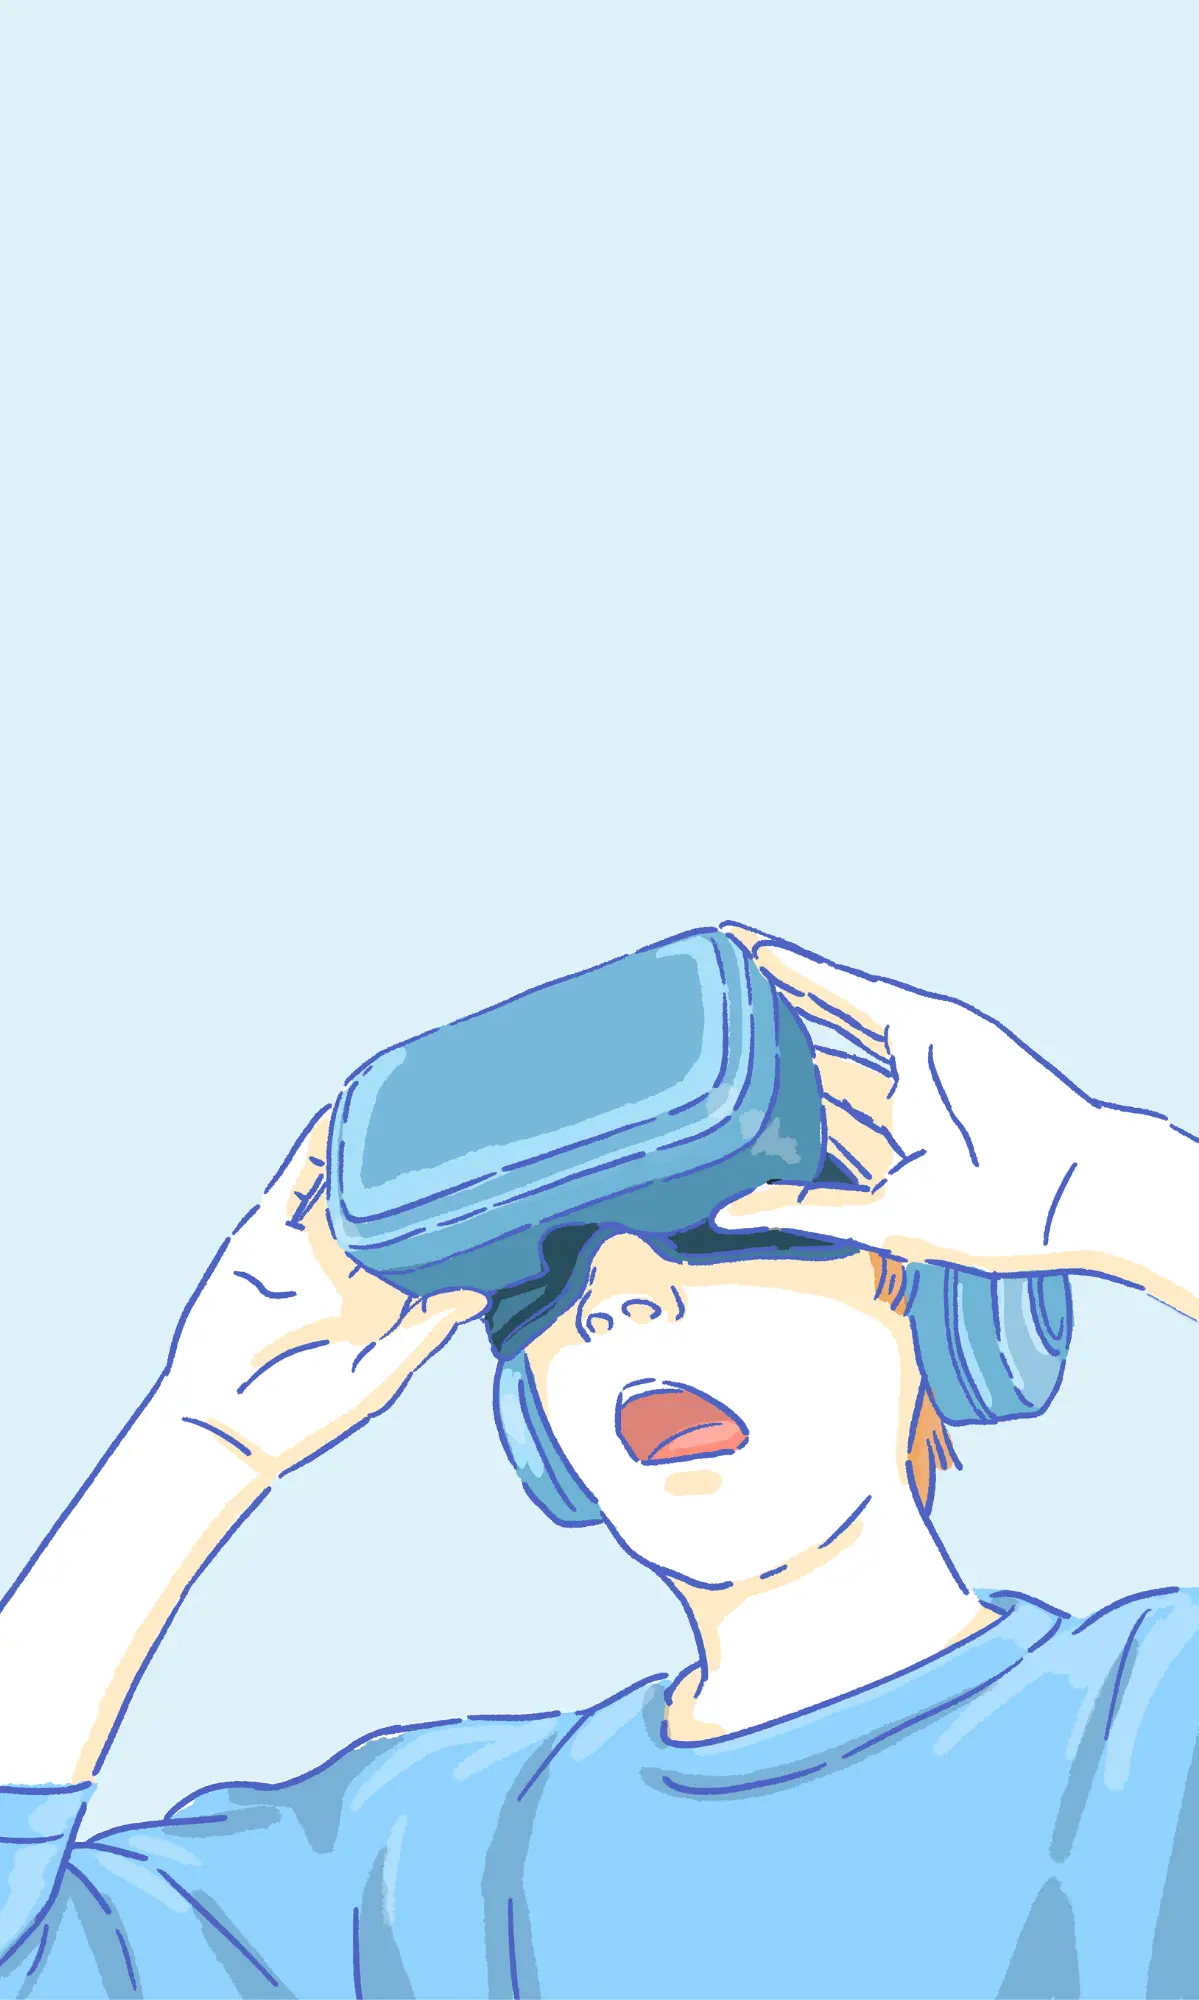 VR之旅